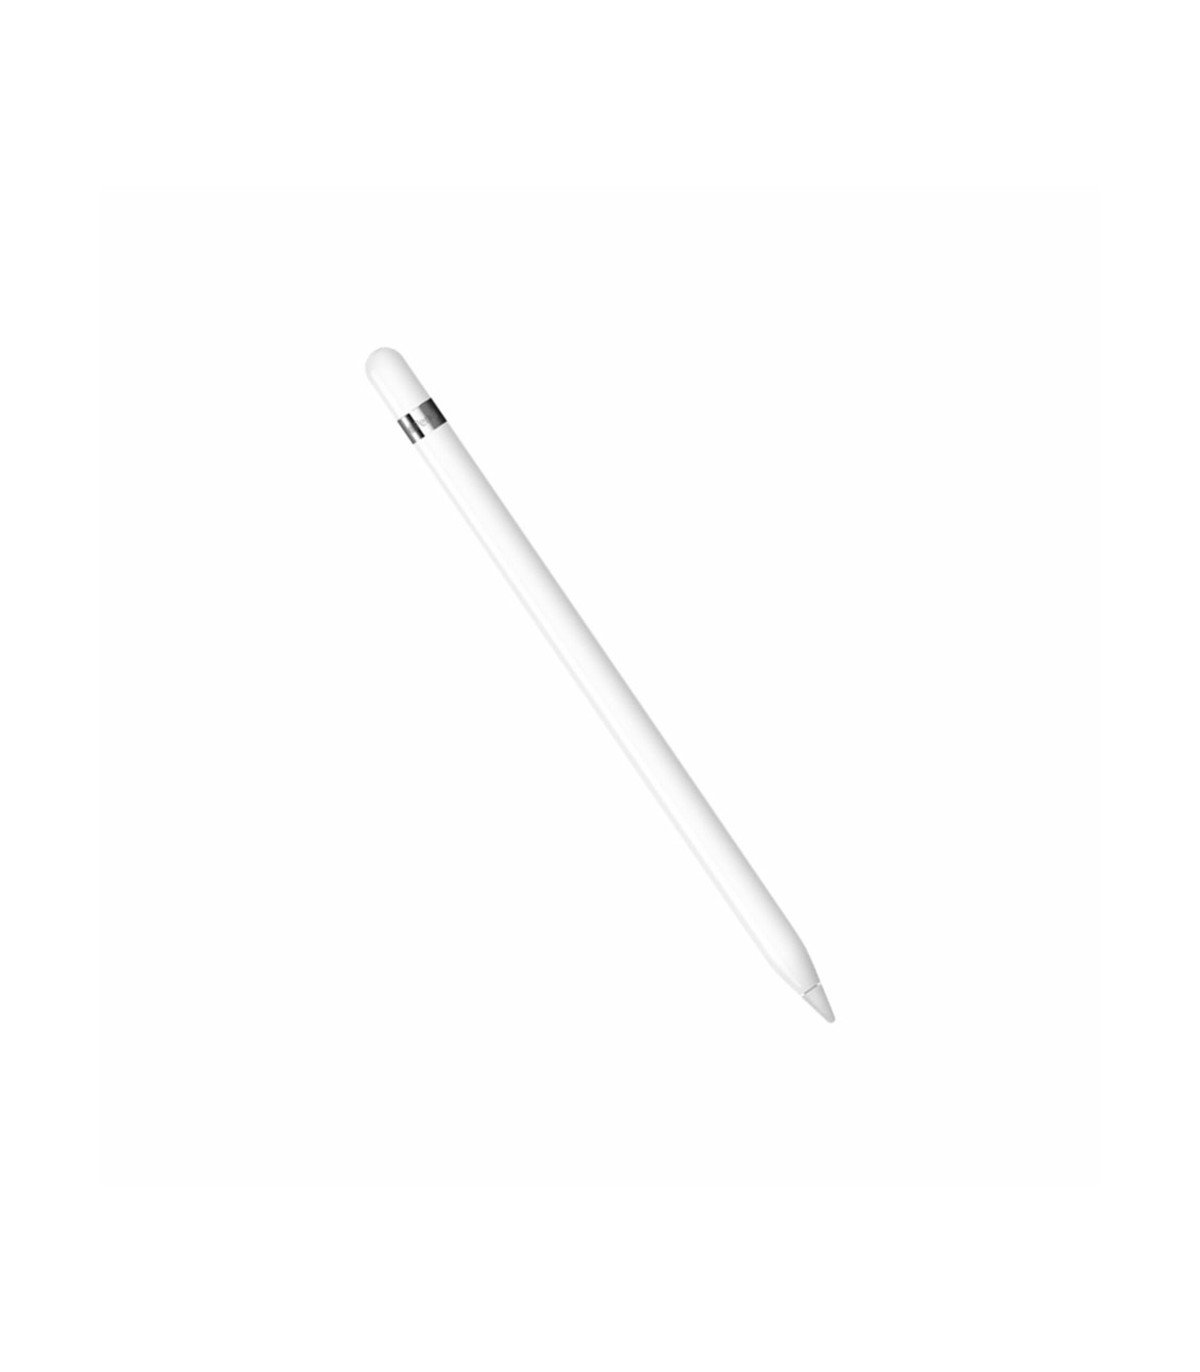 Lapiz para iPad Apple Pencil 1ra Generacion Color Blanco